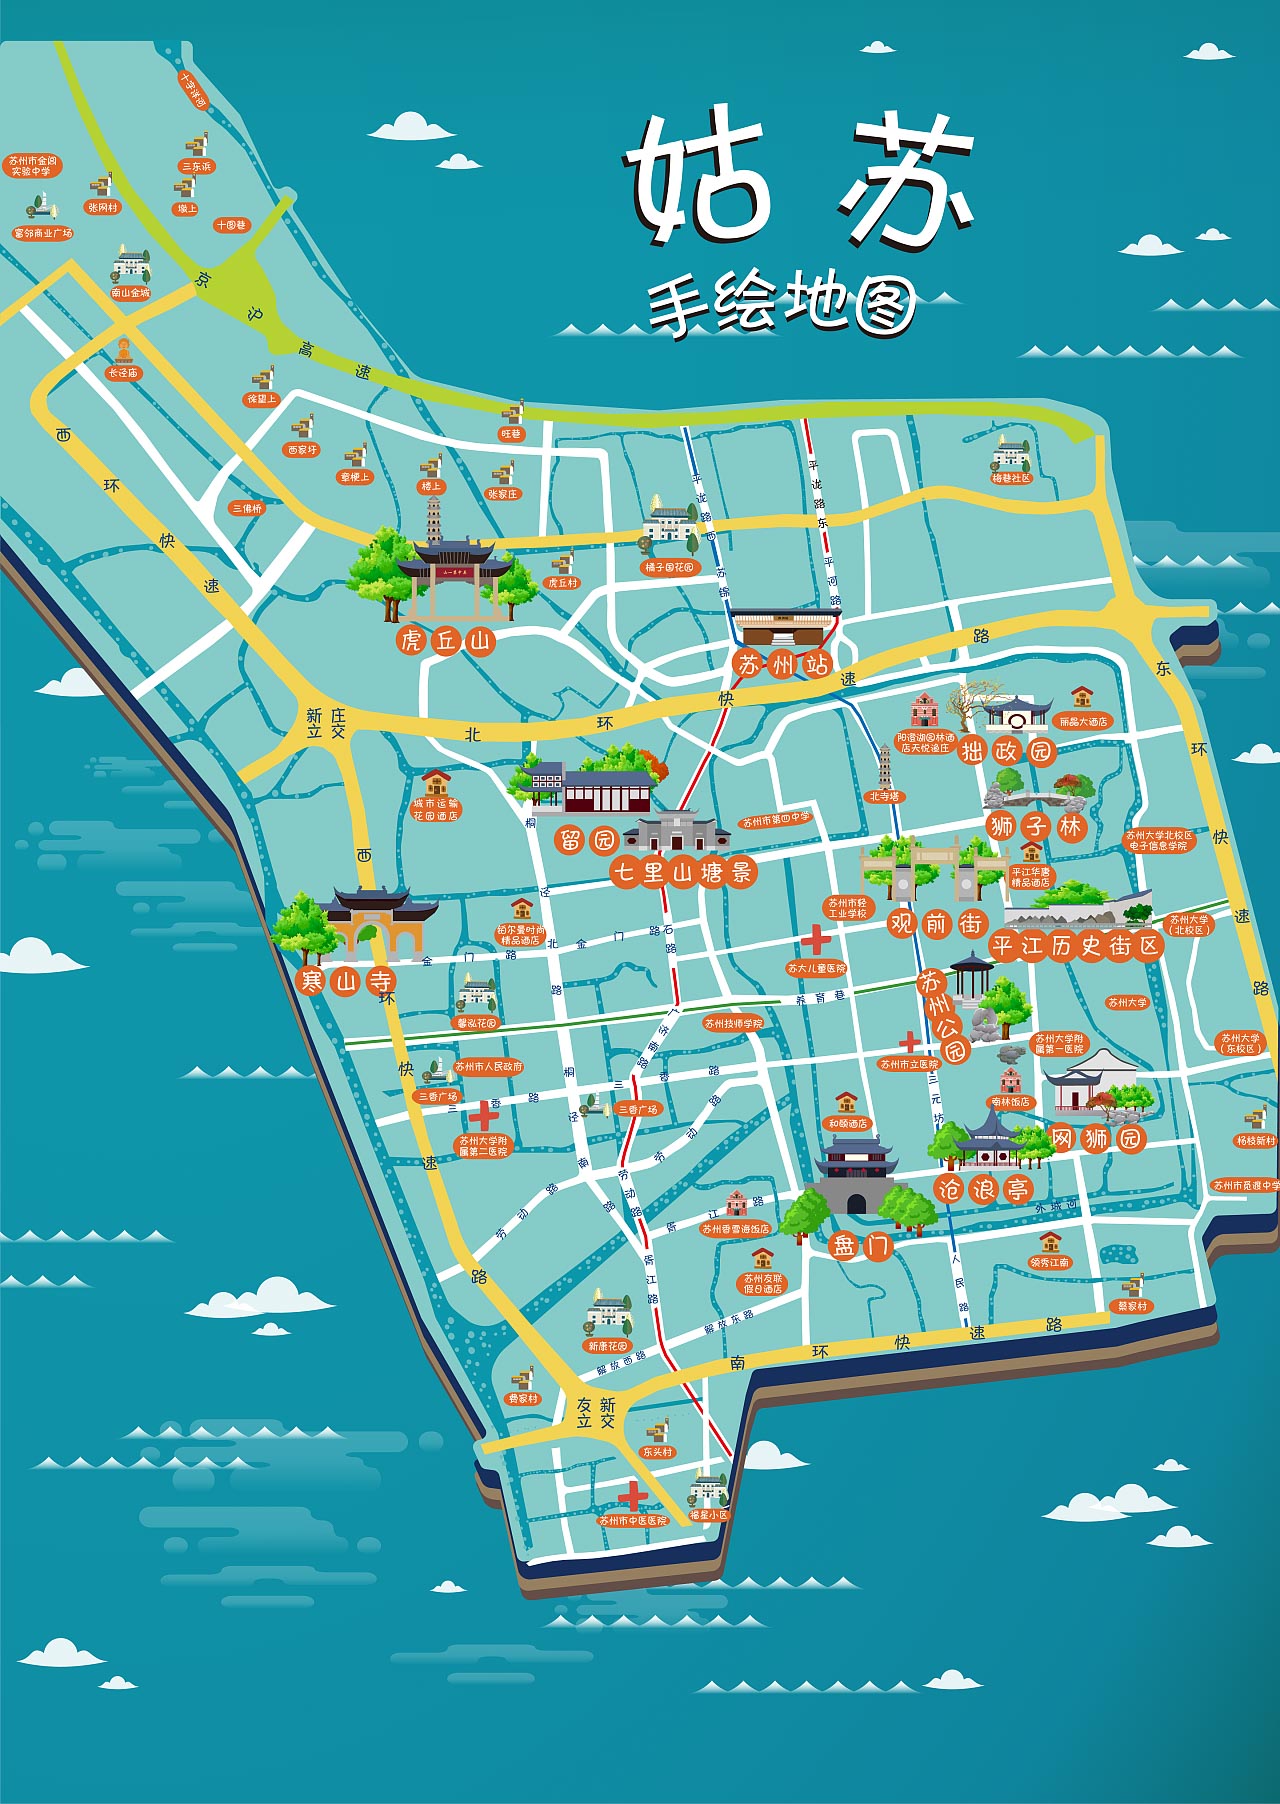 五桂山街道手绘地图景区的文化宝藏